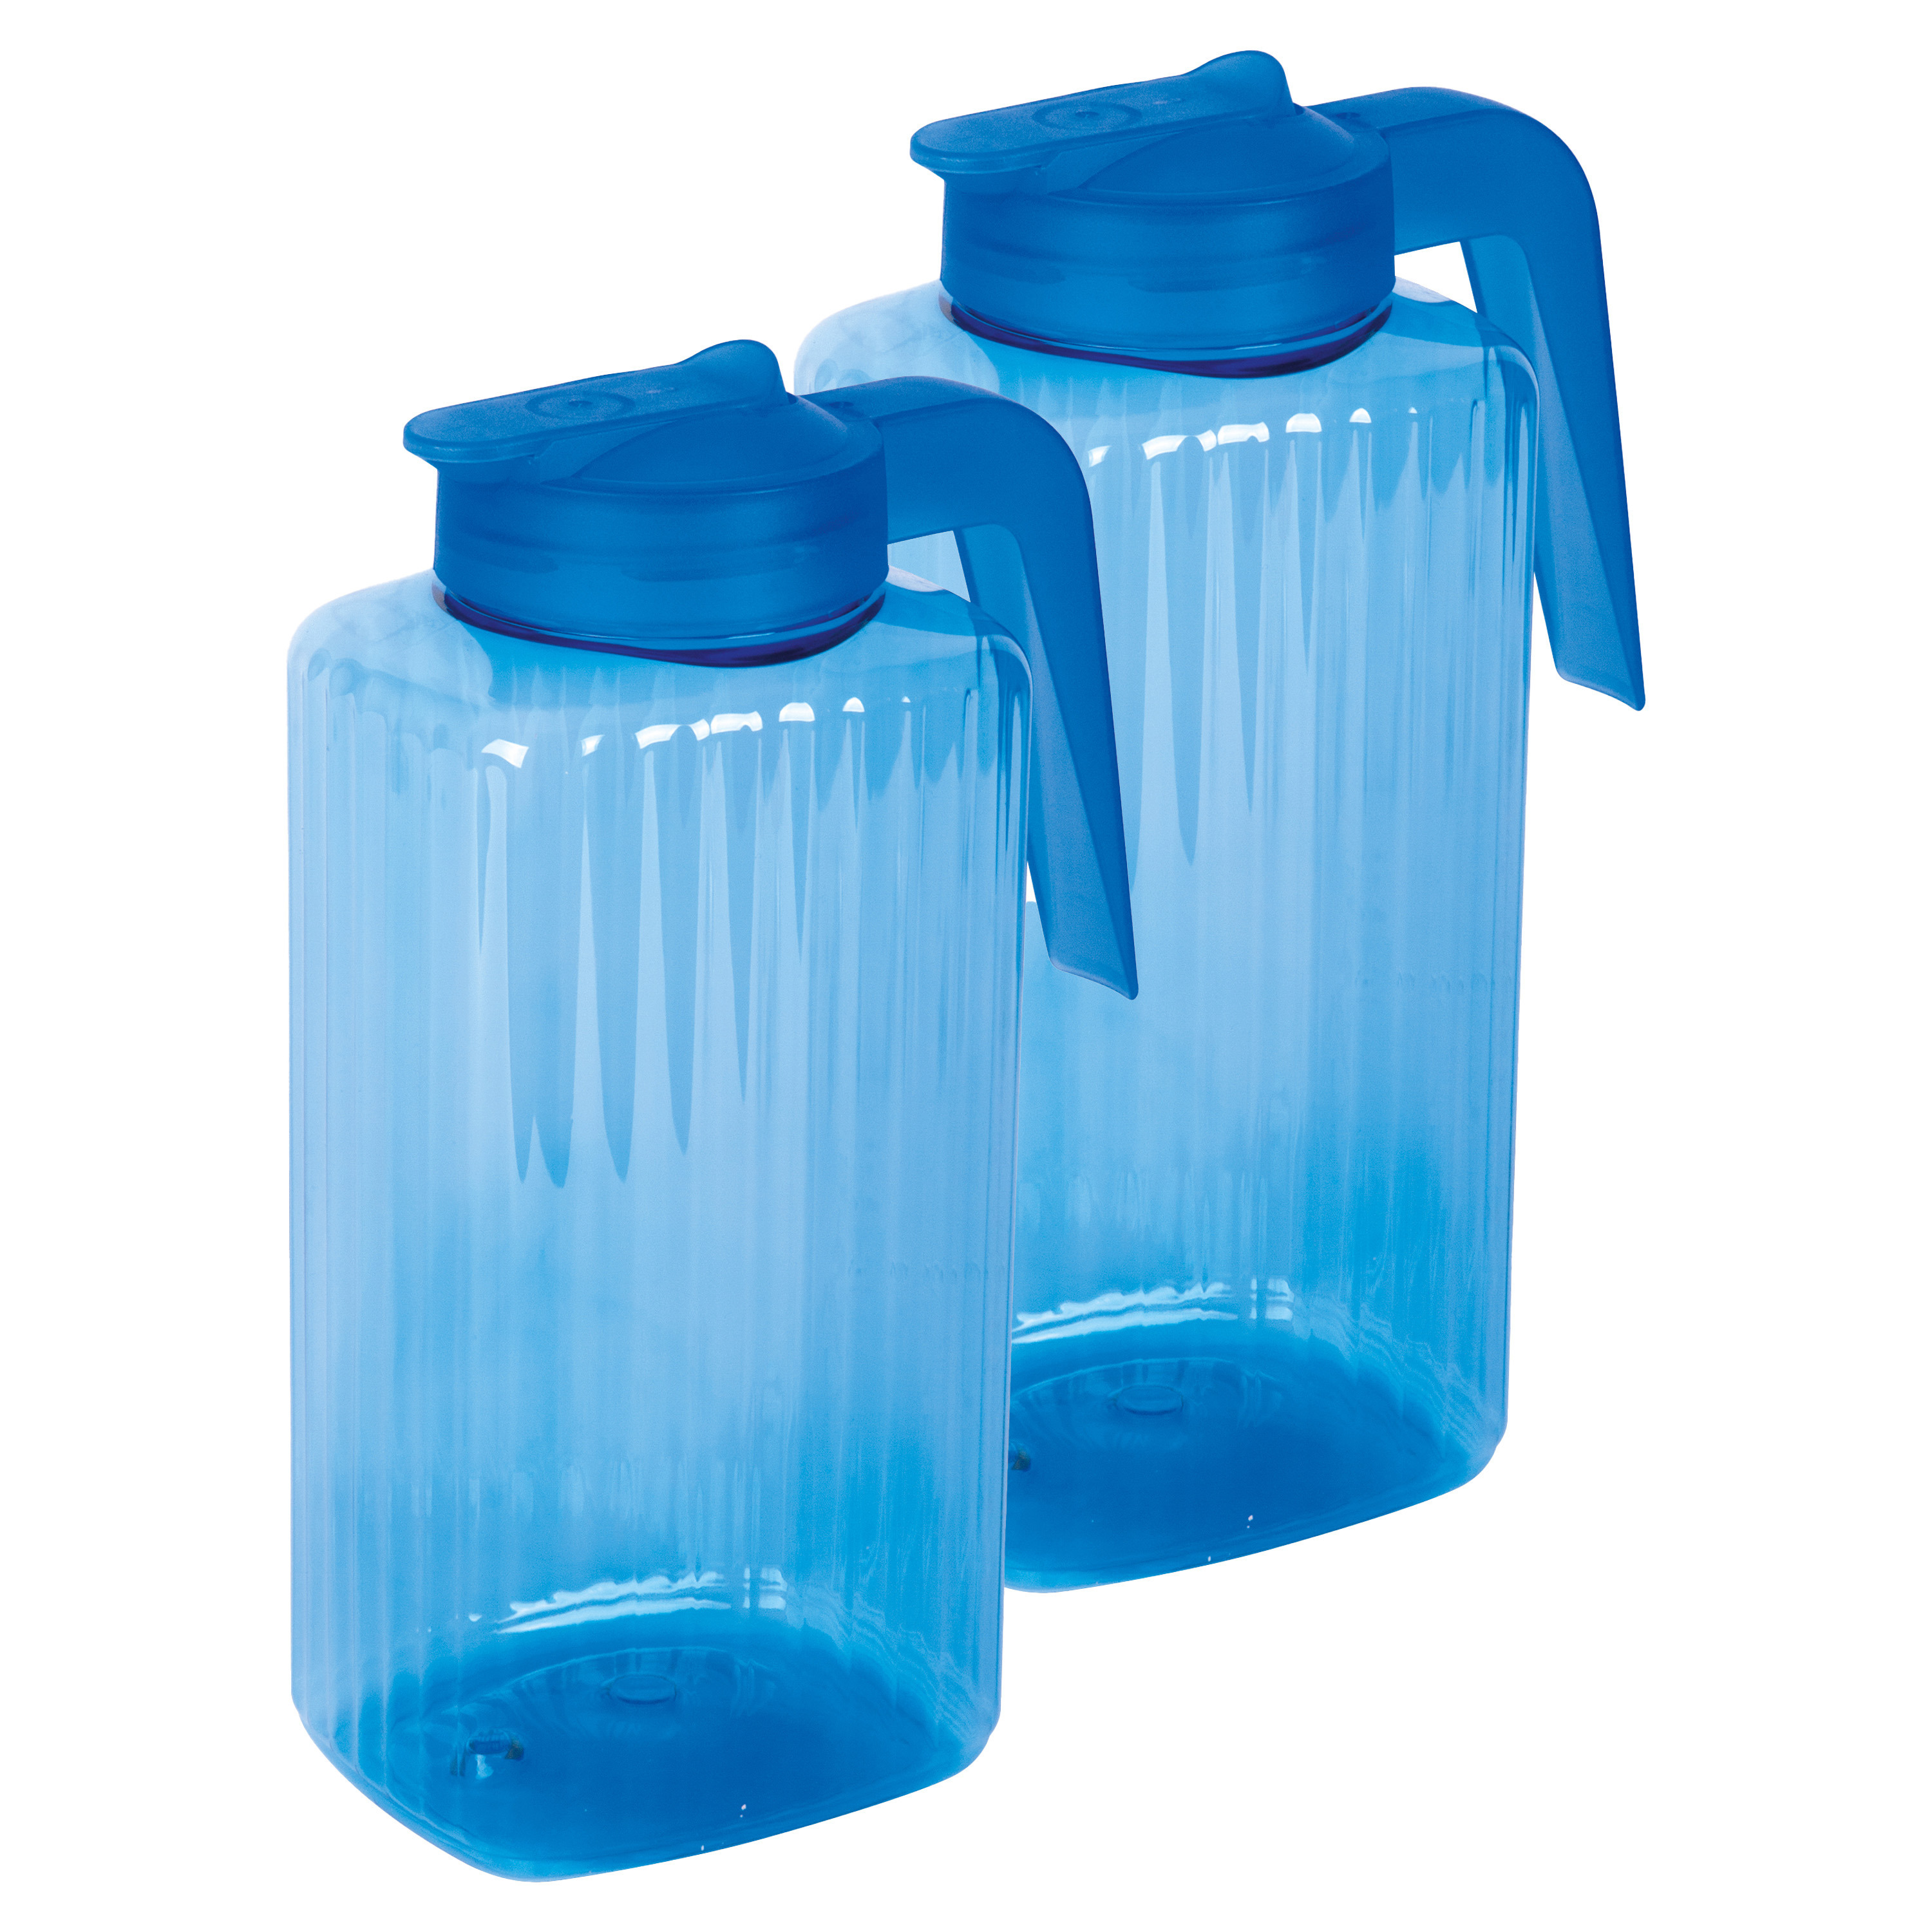 Juypal Hogar Schenkkan/waterkan met deksel - 2x - blauw - 2,2 liter - kunststof - L15 x H24 cm -